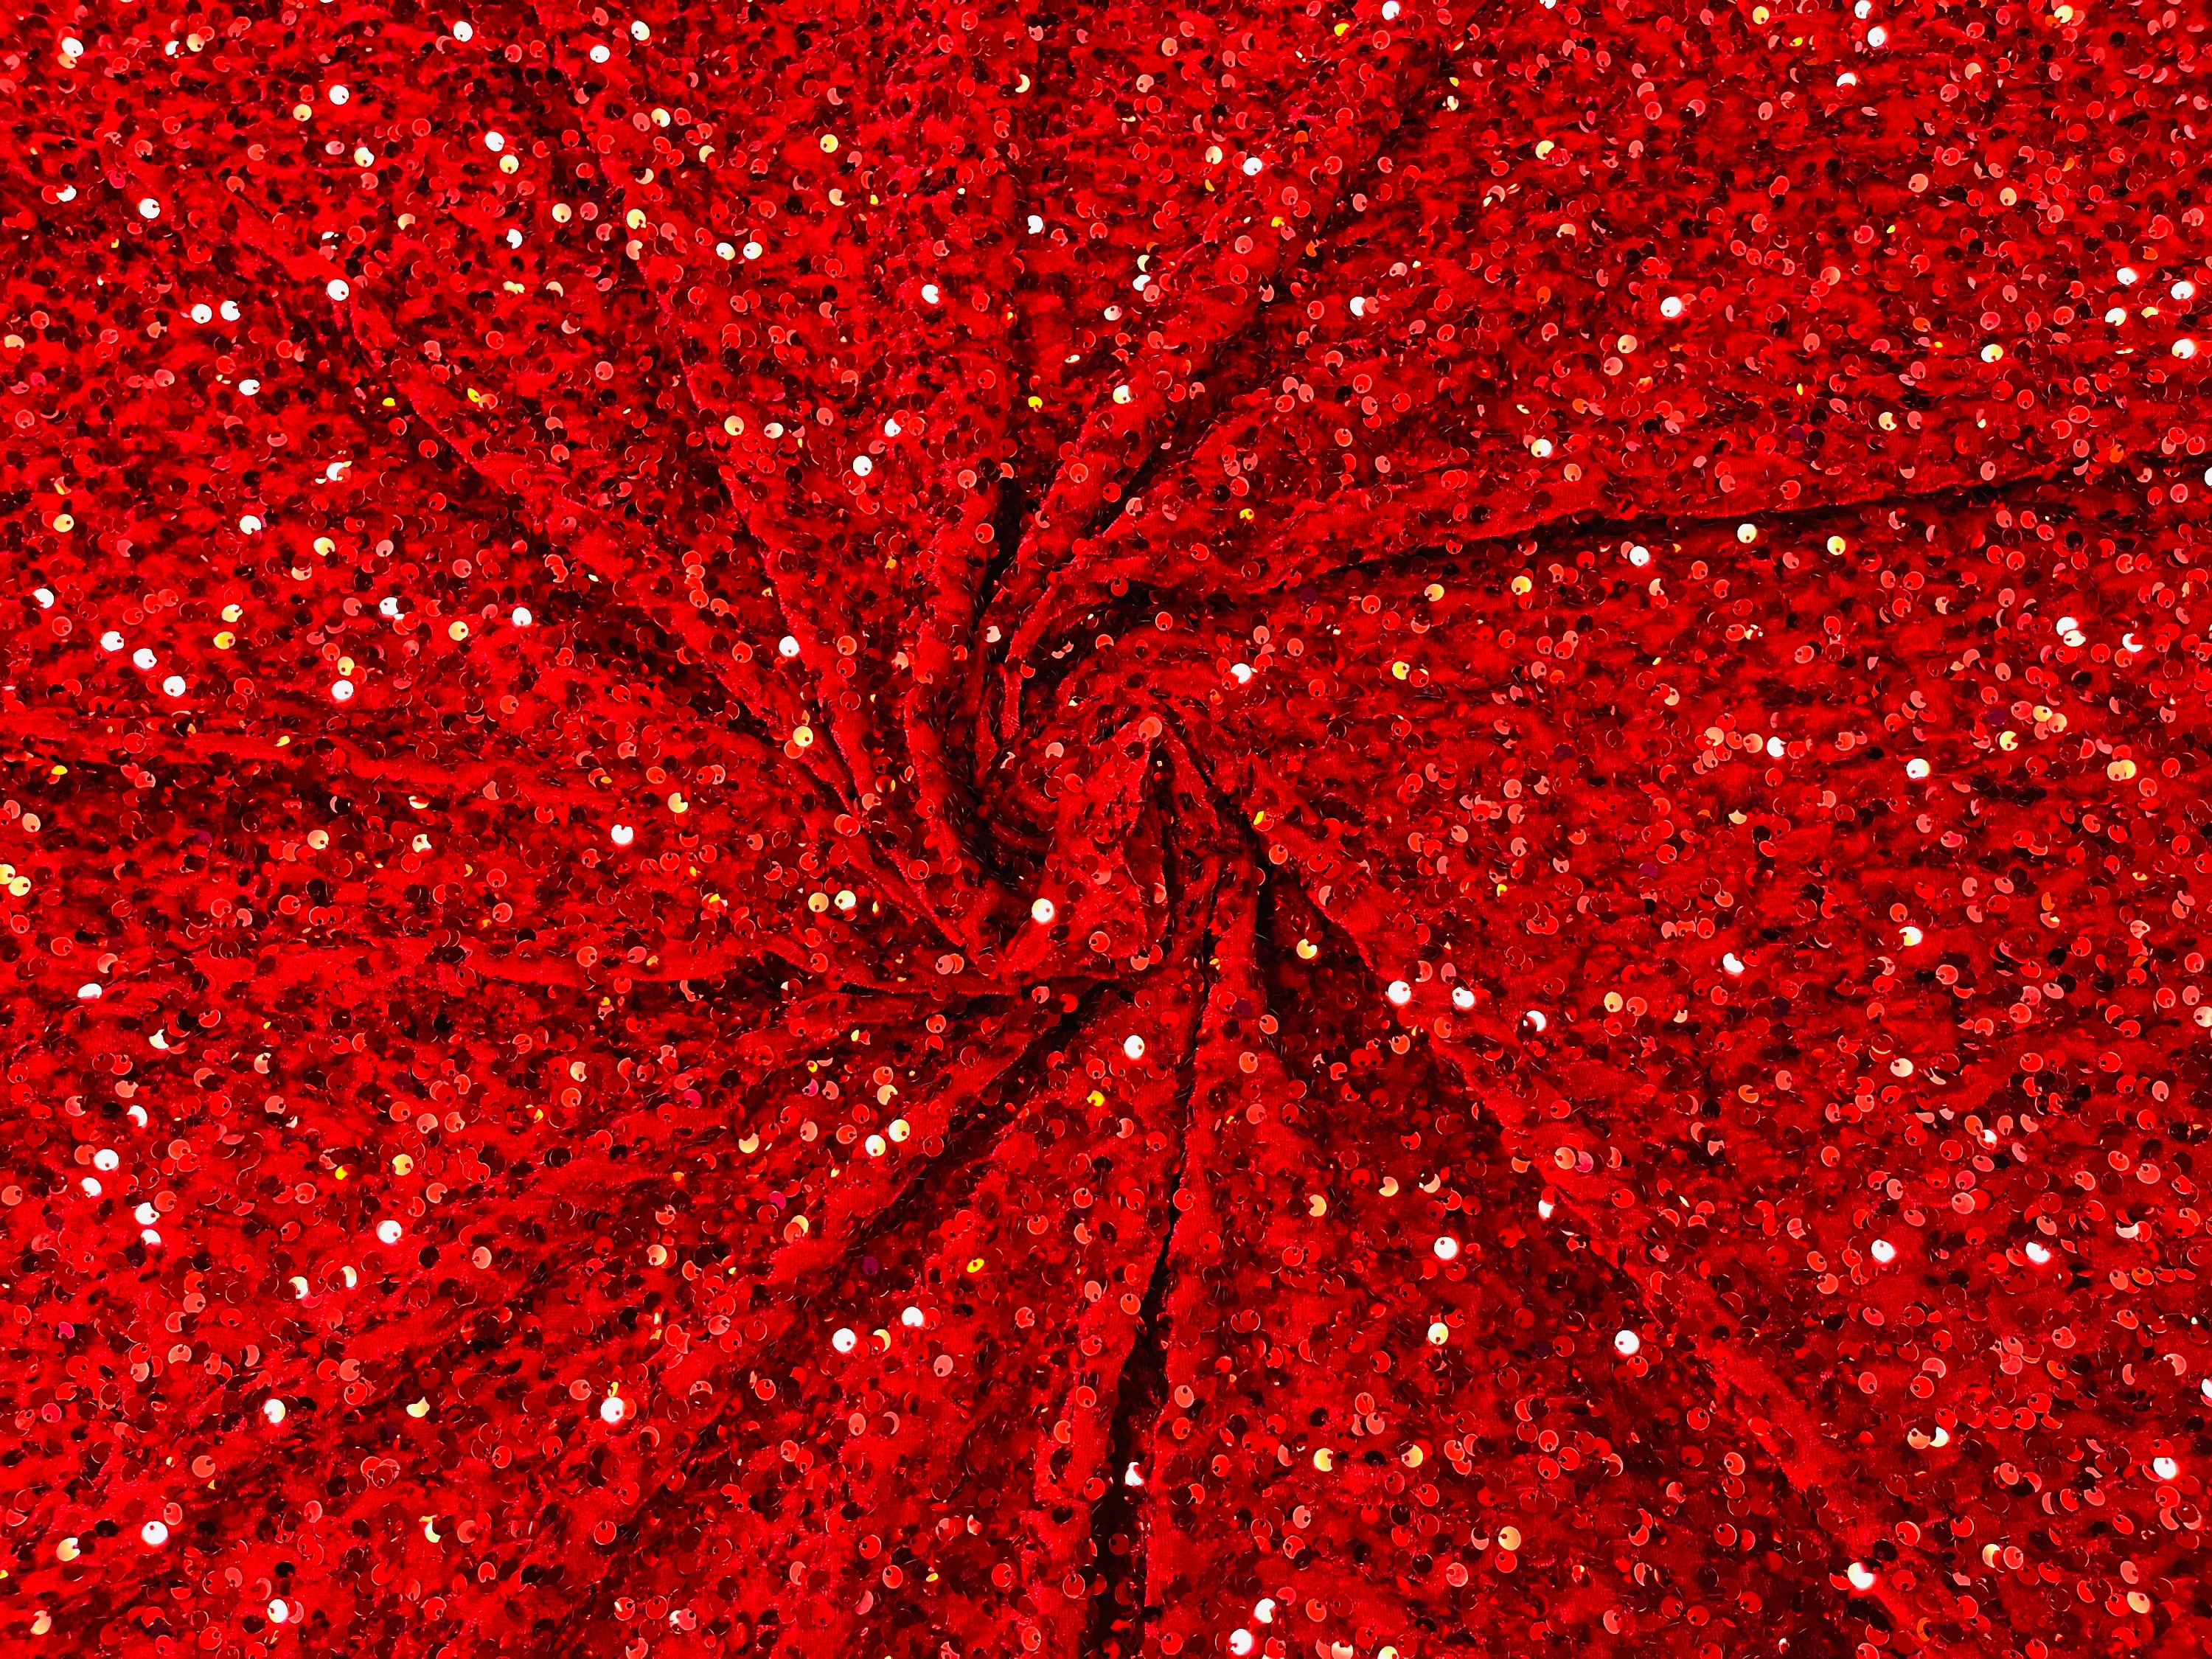 Red All Over Sequins Velvet Fabric. Red Sequin on Stretch Velvet